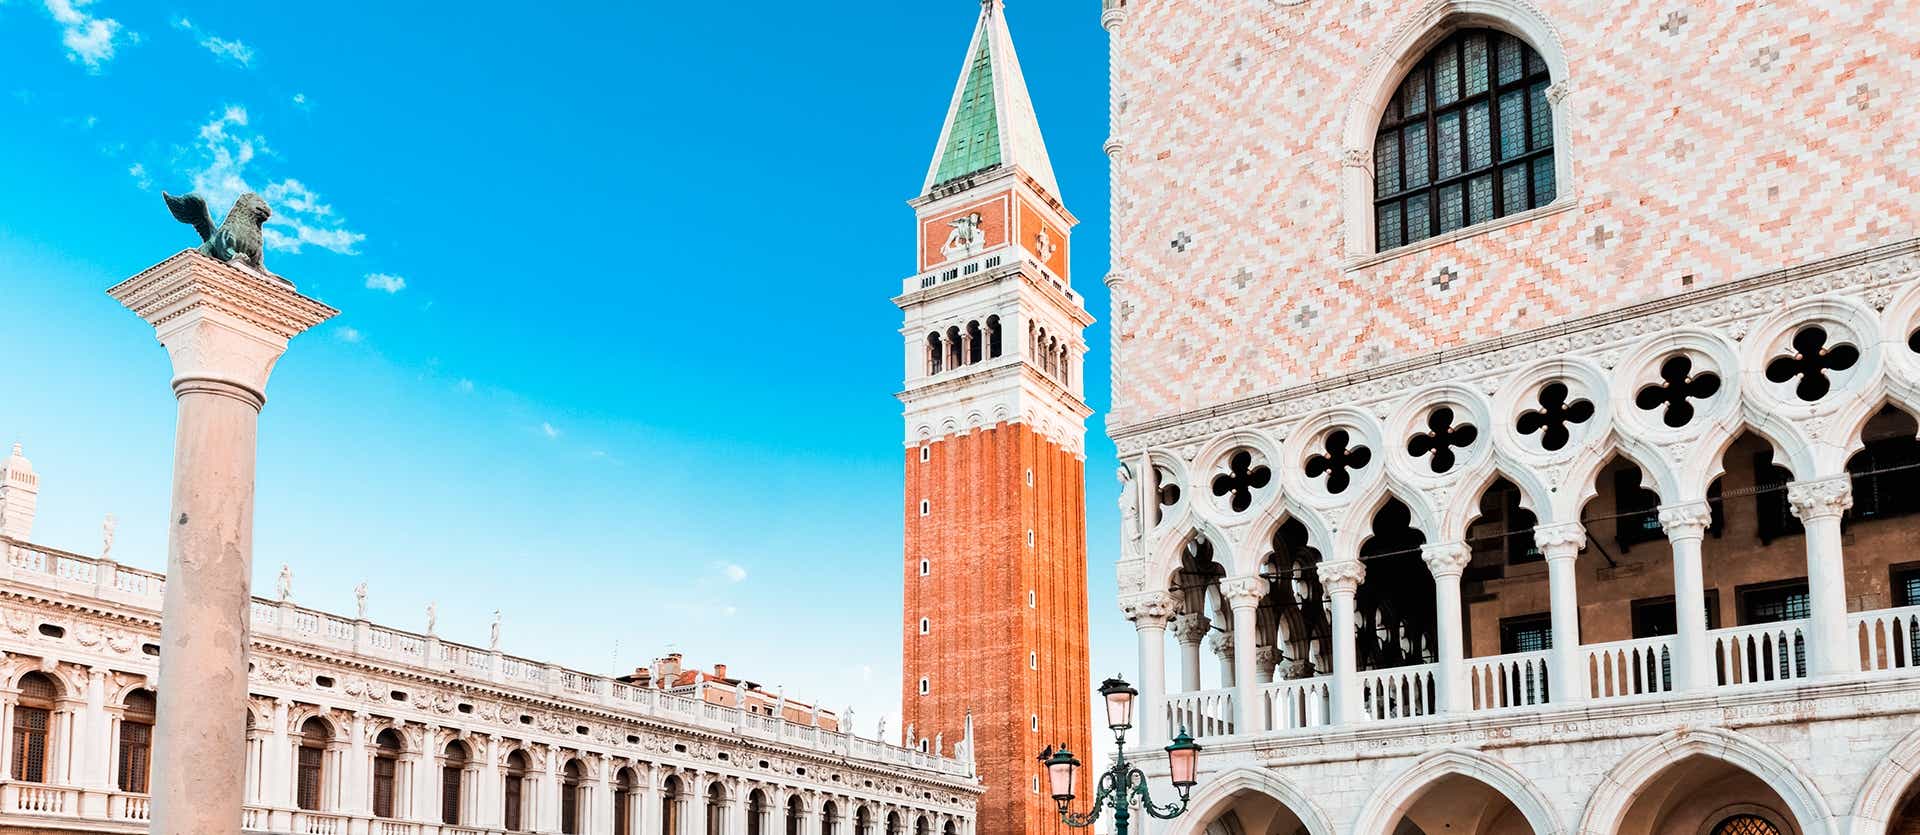 Torre campanario de la Basílica de San Marcos <span class="iconos separador"></span> Venecia <span class="iconos separador"></span> Italis